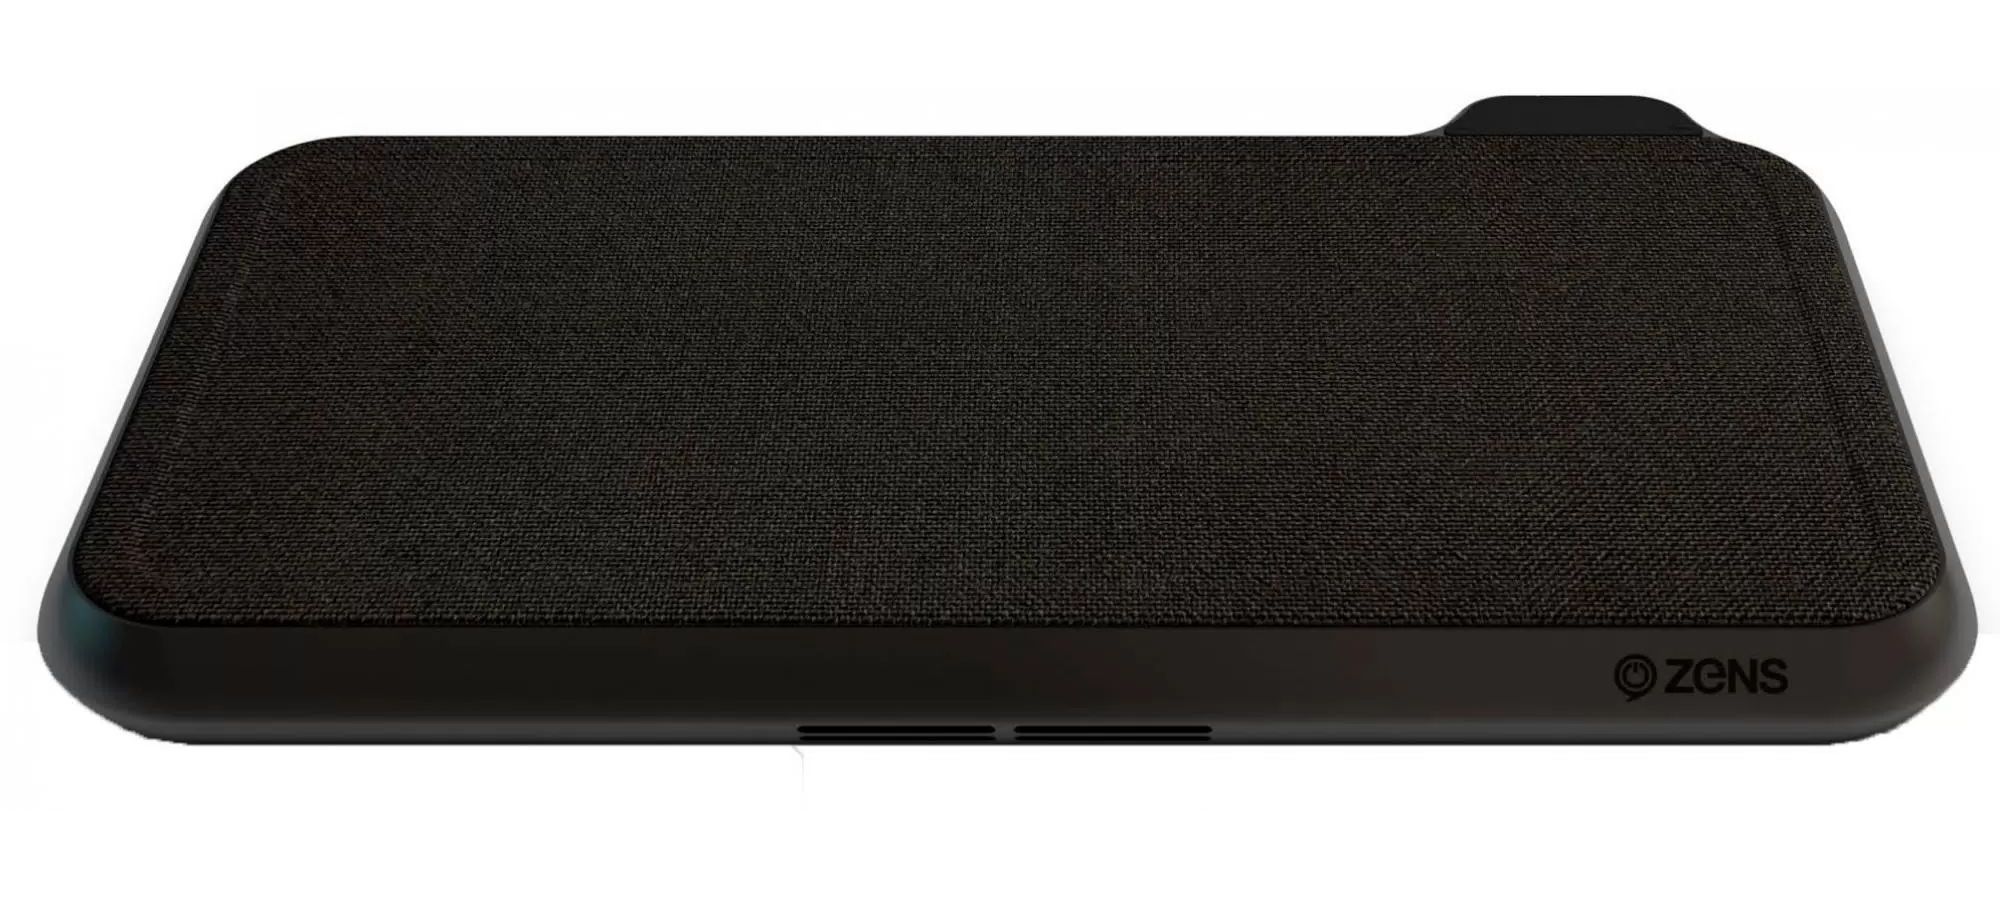 Беспроводное зарядное устройство ZENS Liberty 16 coil Dual Wireless Charger. Цвет черный.